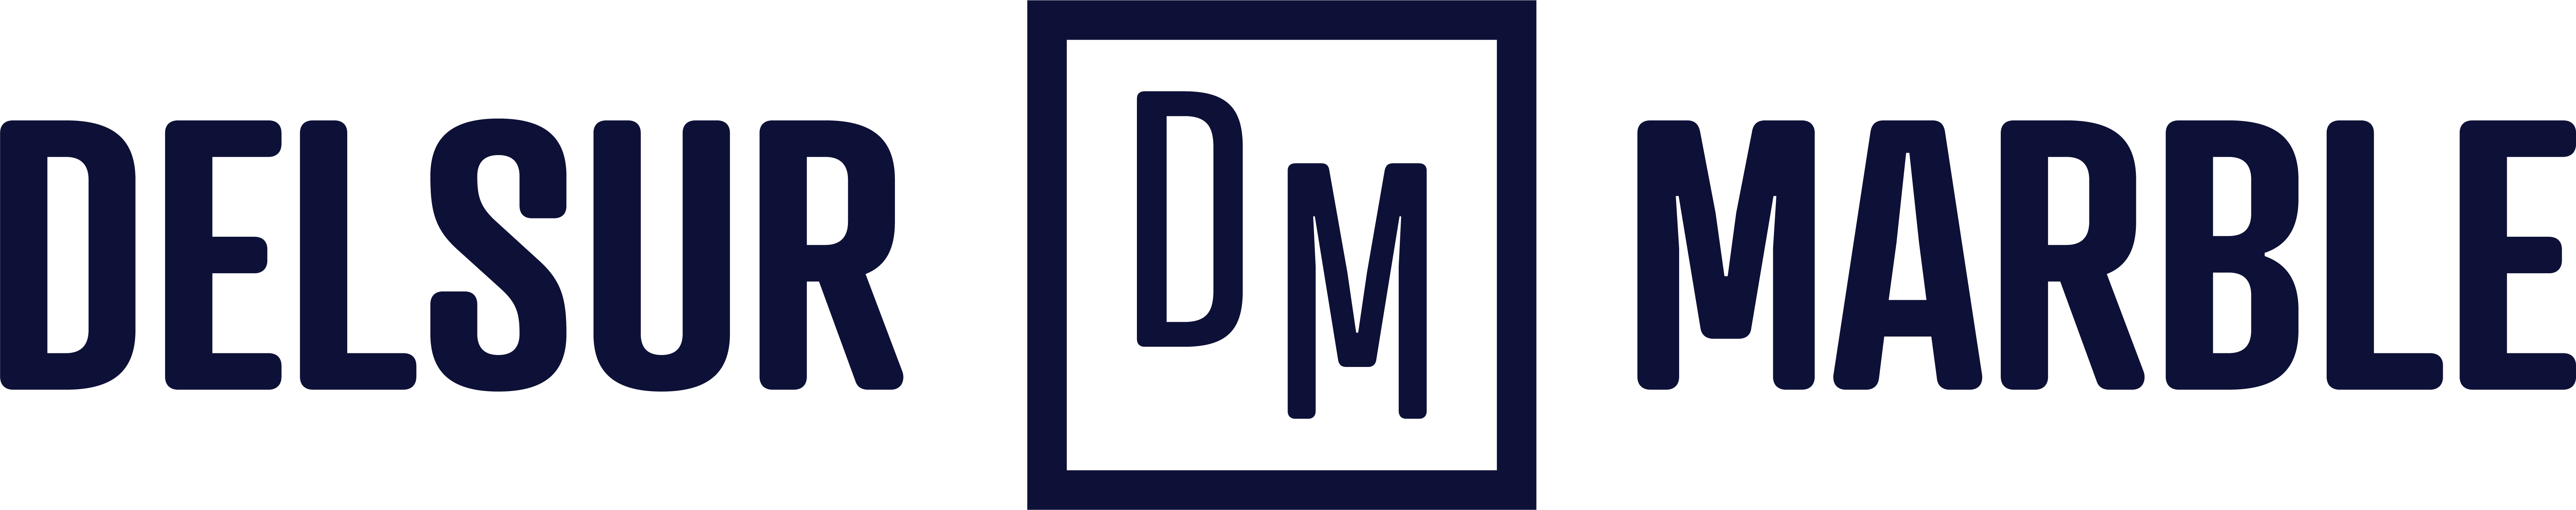 Delsur Marble Inc's logo